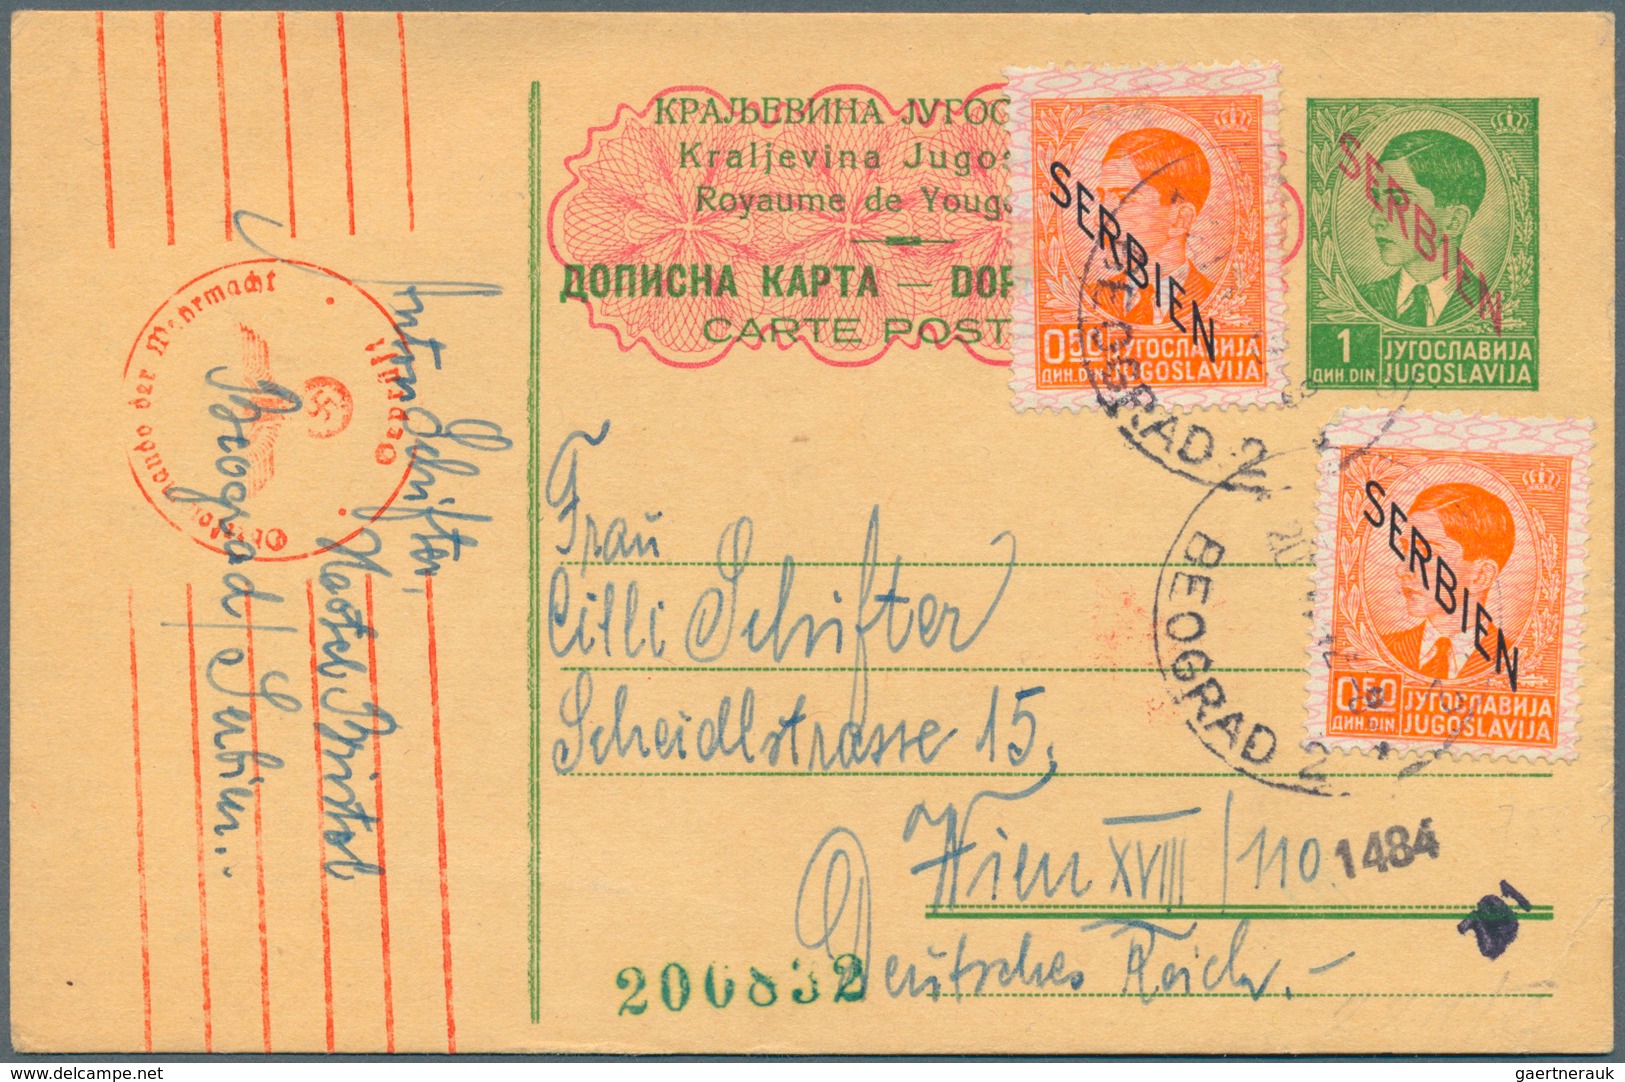 Deutsche Besetzung II. WK: 1938/1945. GANZSACHEN. Spannende Sammlung von 58 Postkarten aus versch. G